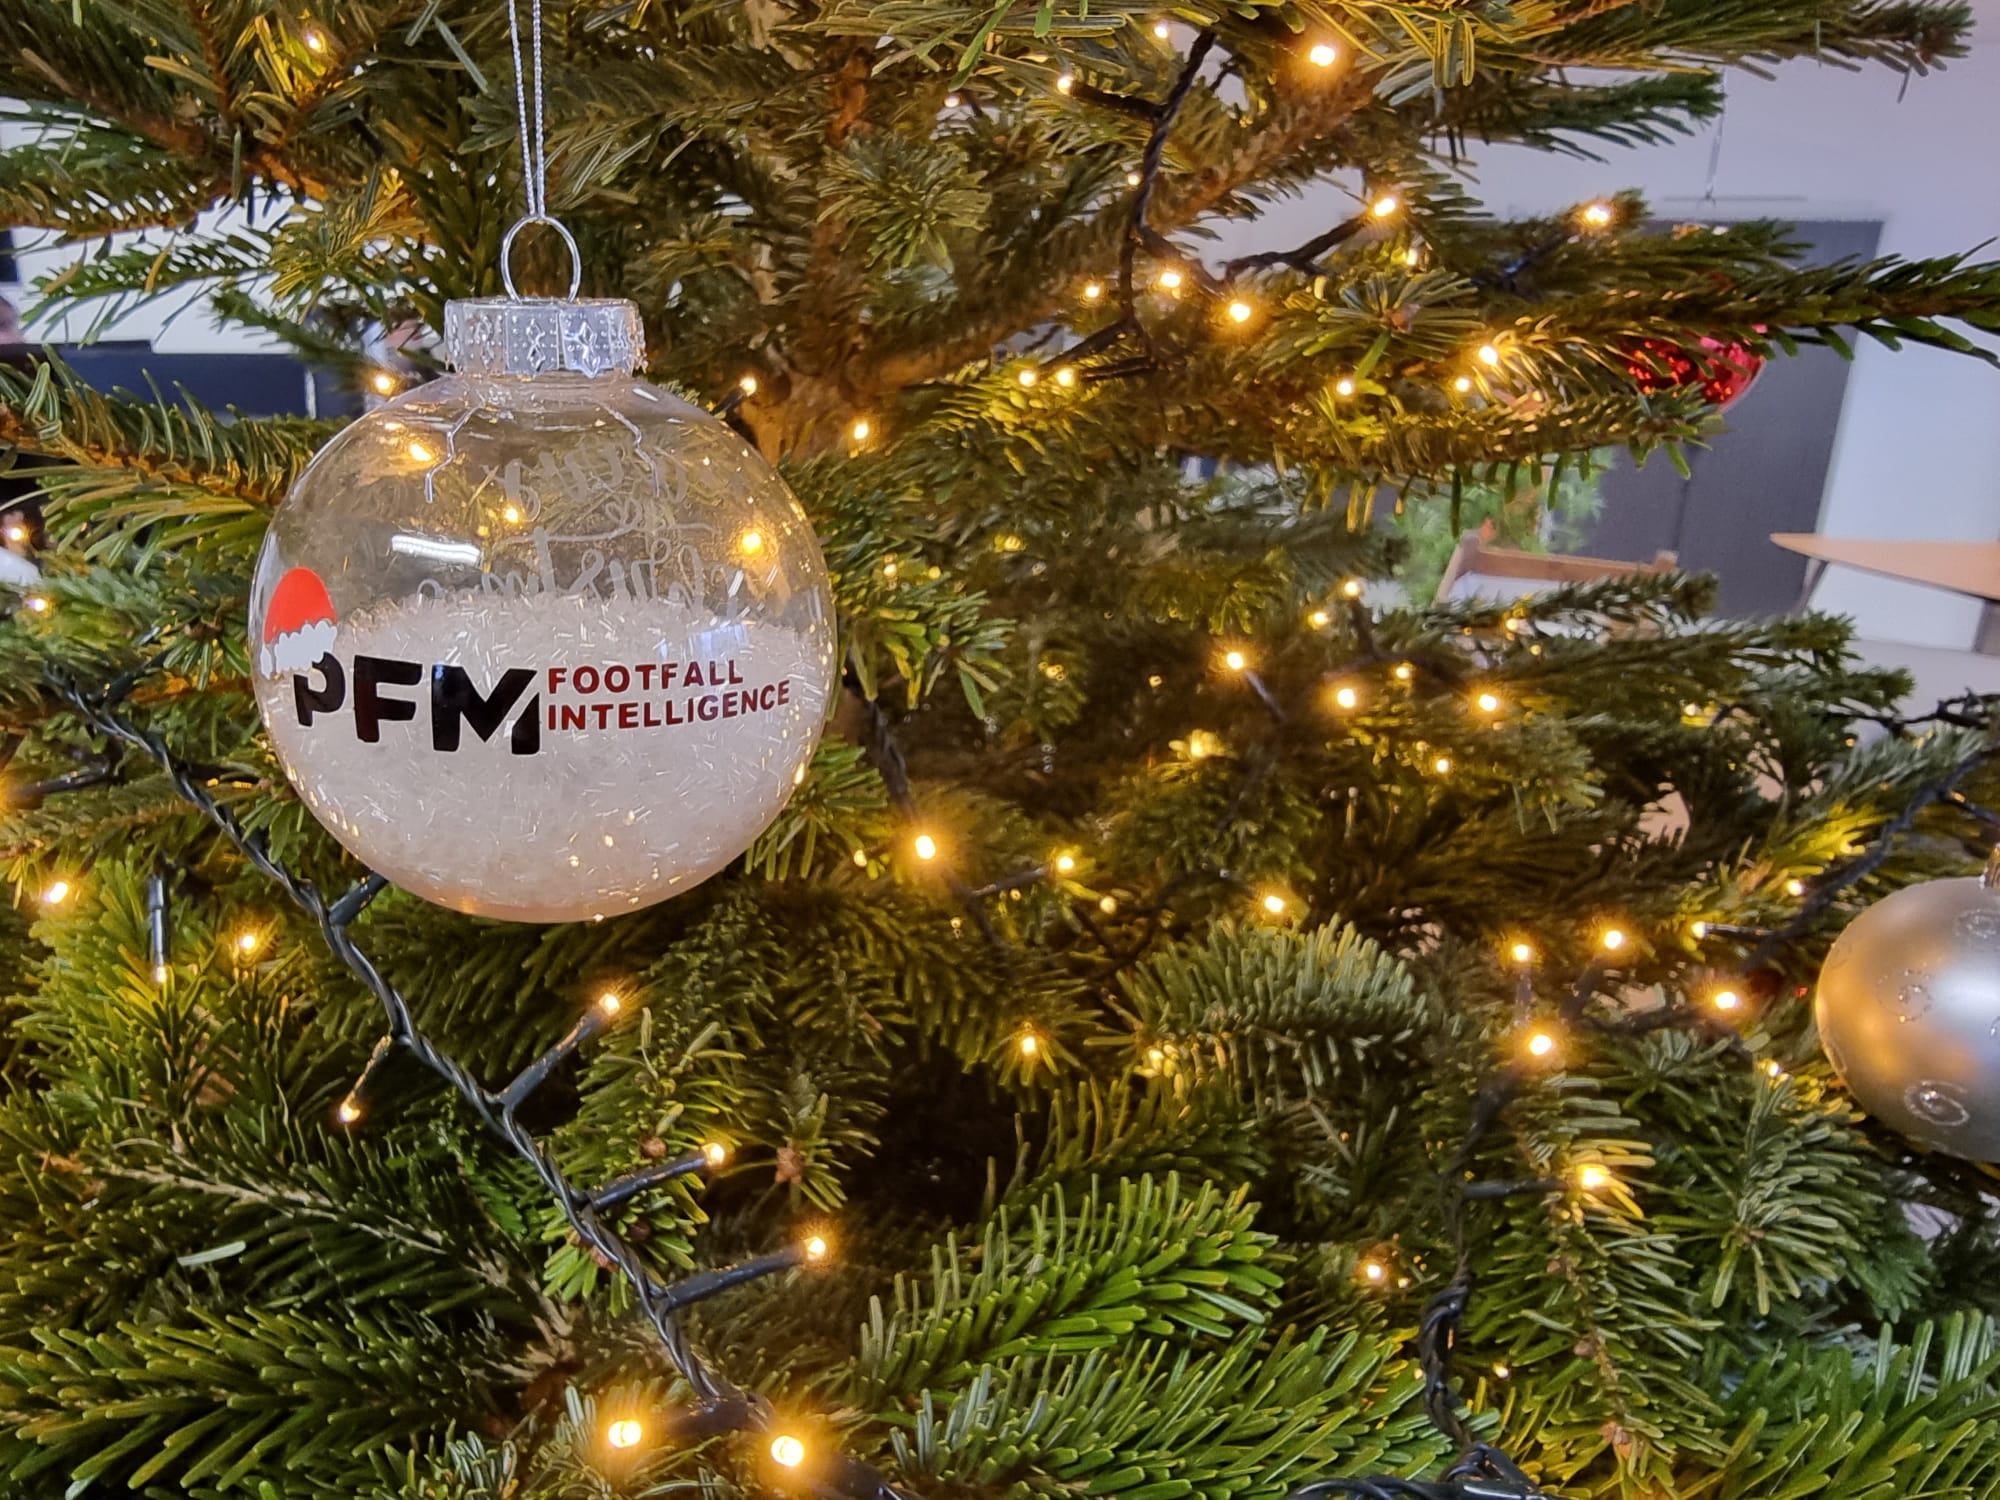 Christmas ball, footfall intelligence, PFM, Christmas tree (1)